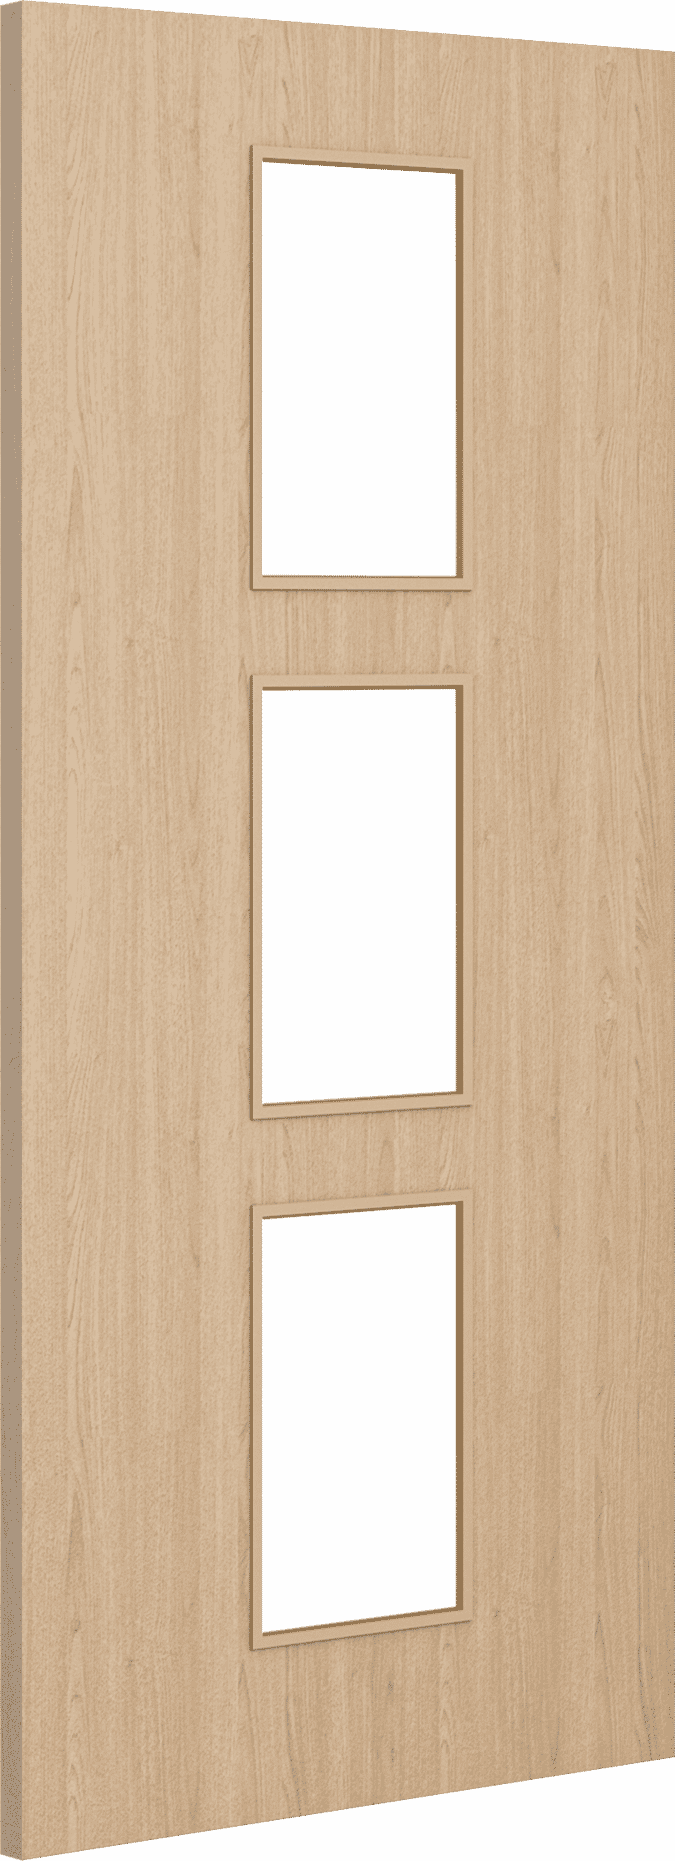 1981mm x 838mm x 54mm (33") Architectural Oak 11 Clear Glazed - Prefinished FD60 Fire Door Blank